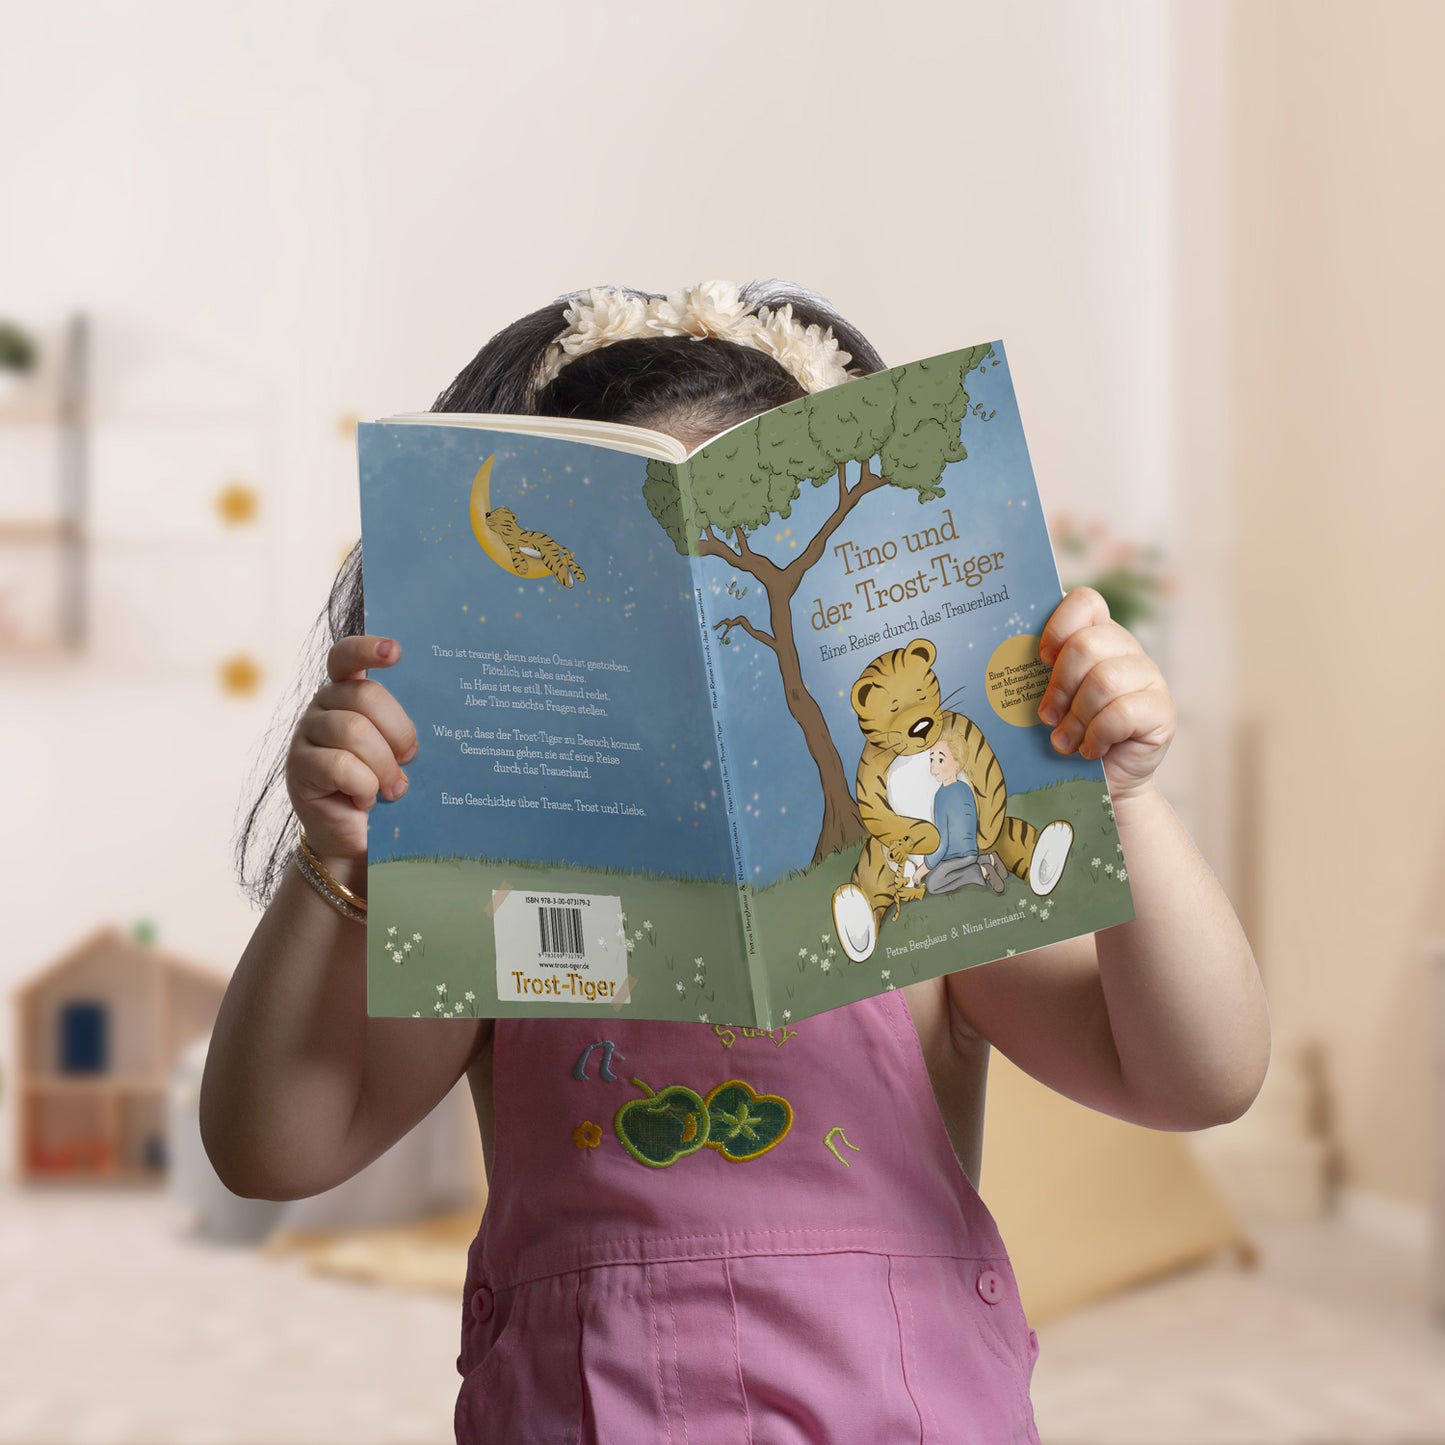 Das Trost-Tiger Kinderbuch: Eine Reise durch das Trauerland